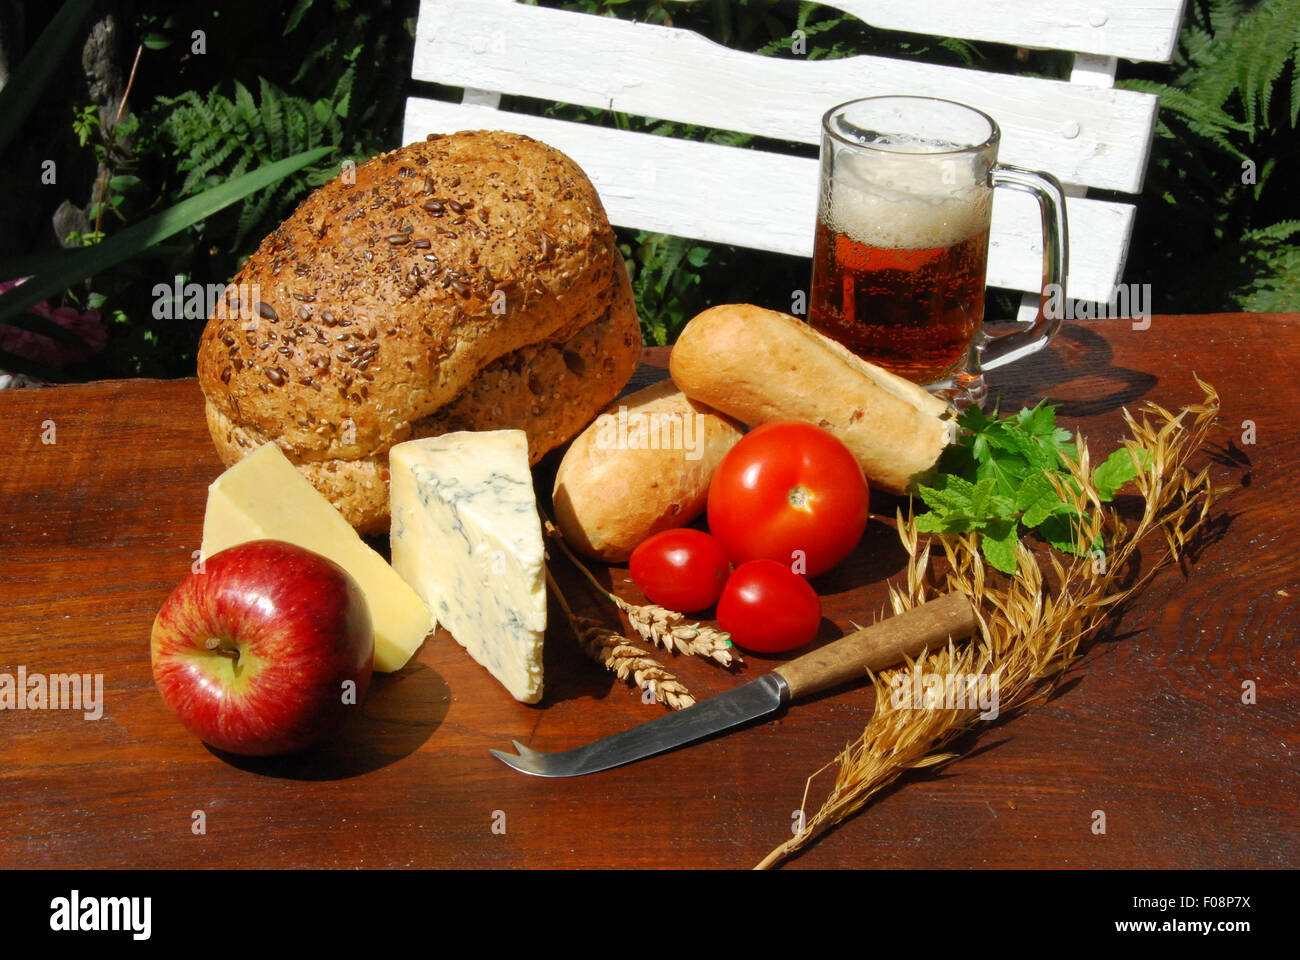 PLOWMAN il pranzo. Un pub con giardino di agricoltori il pranzo con pane fresco, formaggio,apple,pomodoro e real ale birra Foto Stock